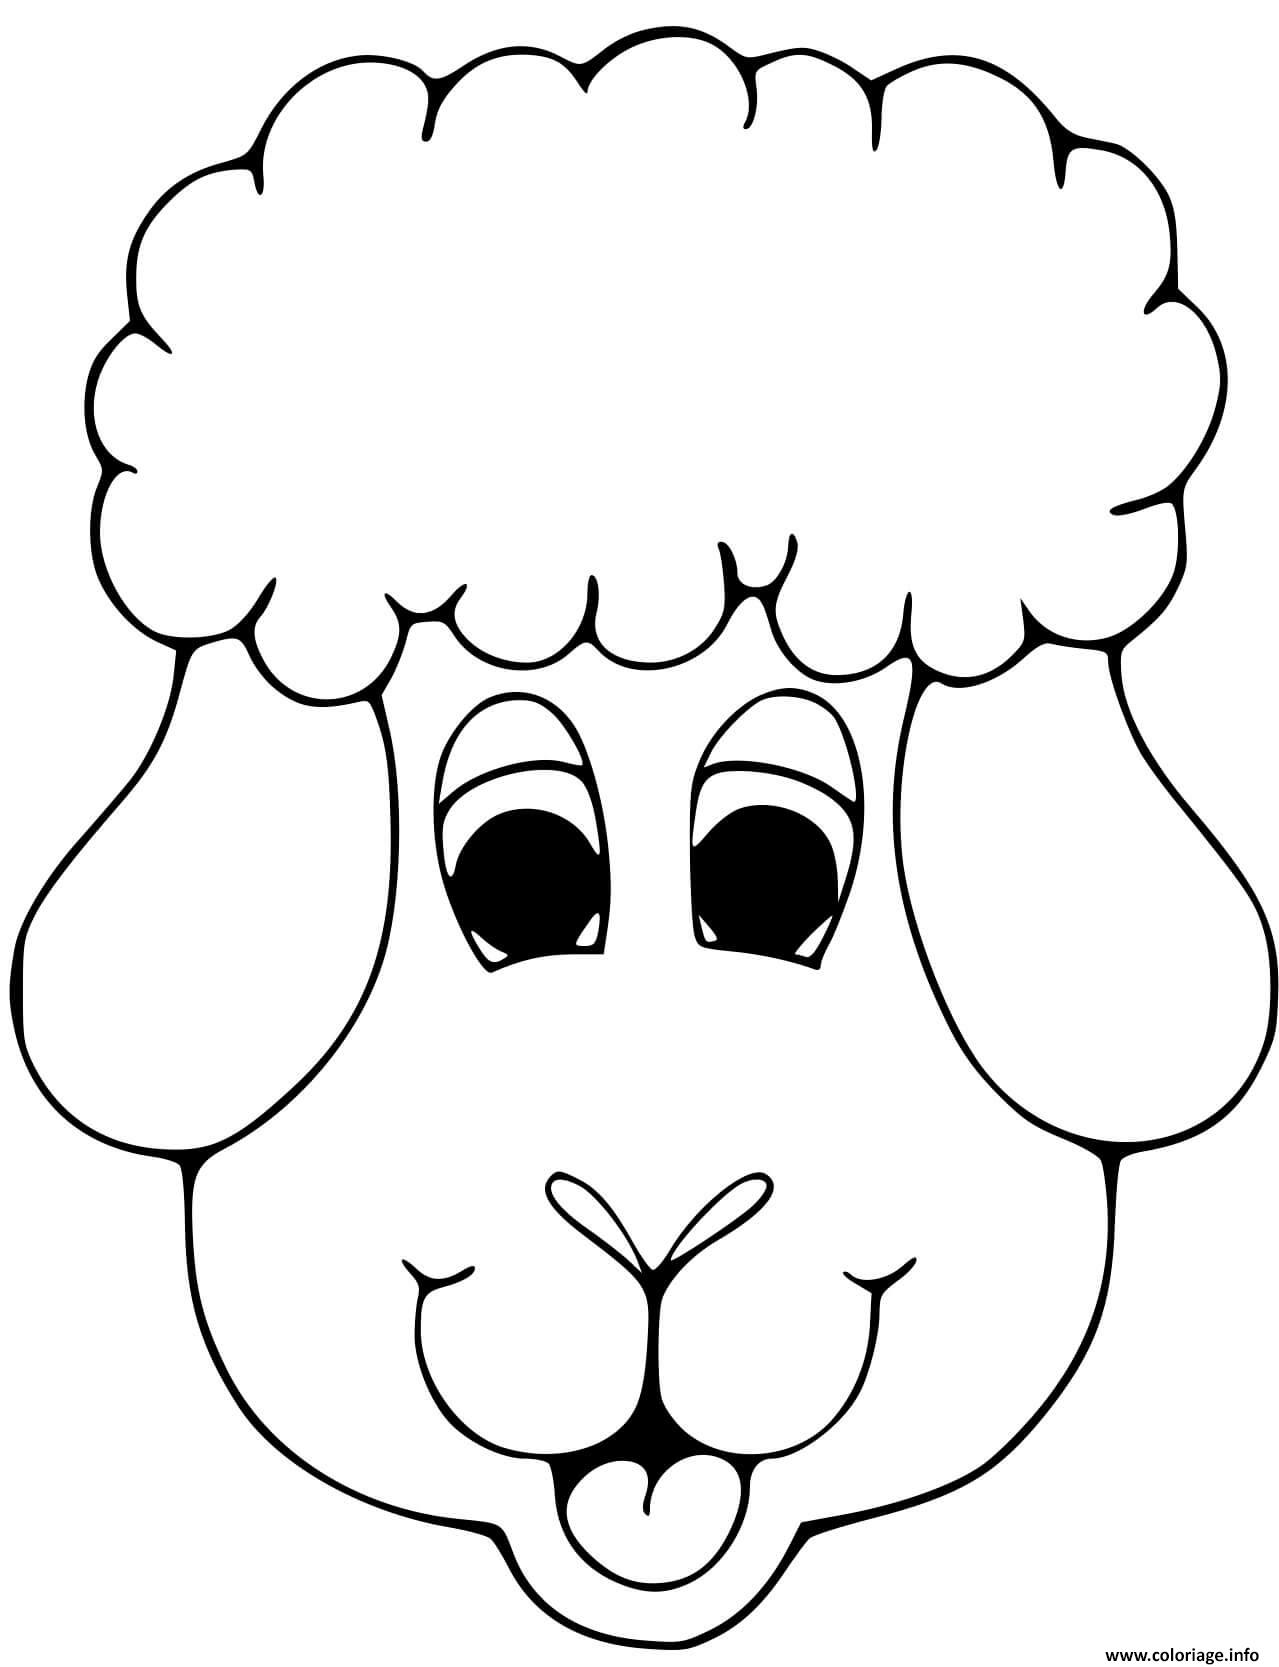 Coloriage Tete De Mouton Dessin Mouton A Imprimer